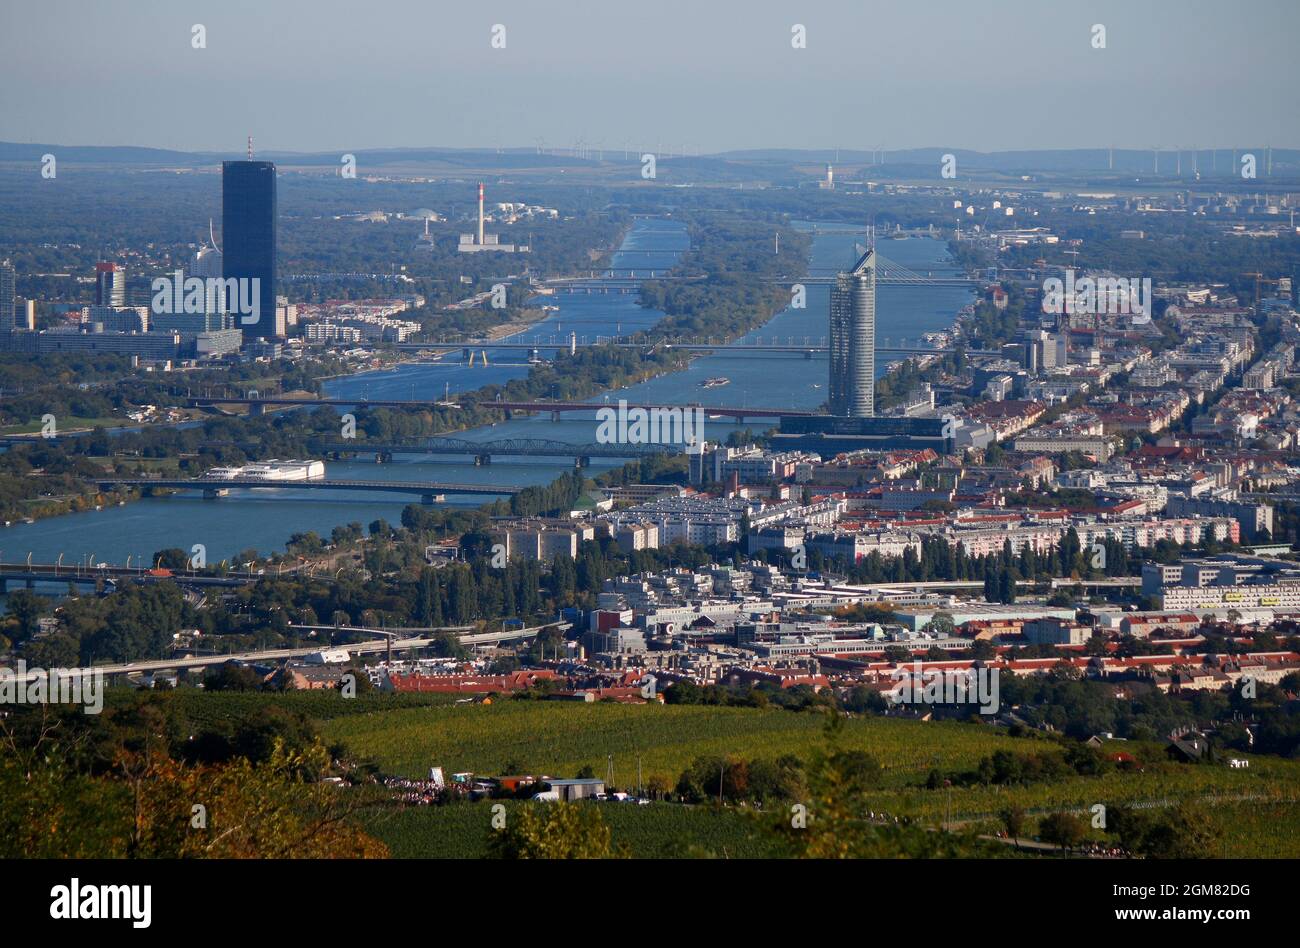 Luftbild: Donau/ Danubio, DC Tower, Millennium Tower, Skyline, Wien Oesterreich/ Vienna, Austria (nur fuer redaktionelle Verwendung. Keine Werbung. Ri Foto Stock